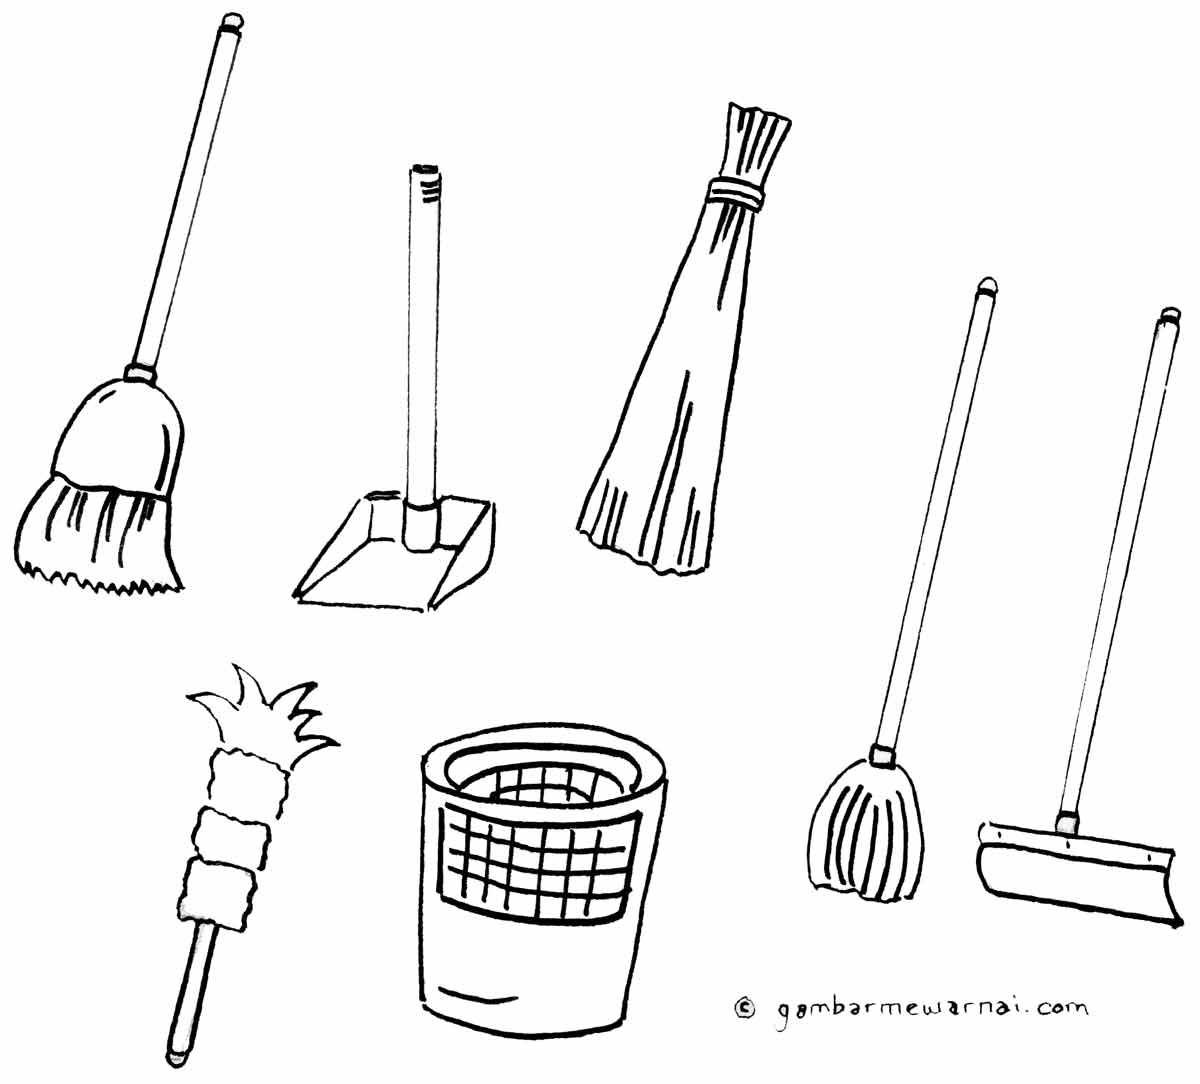 Gambar Alat Kebersihan Rumah - KibrisPDR